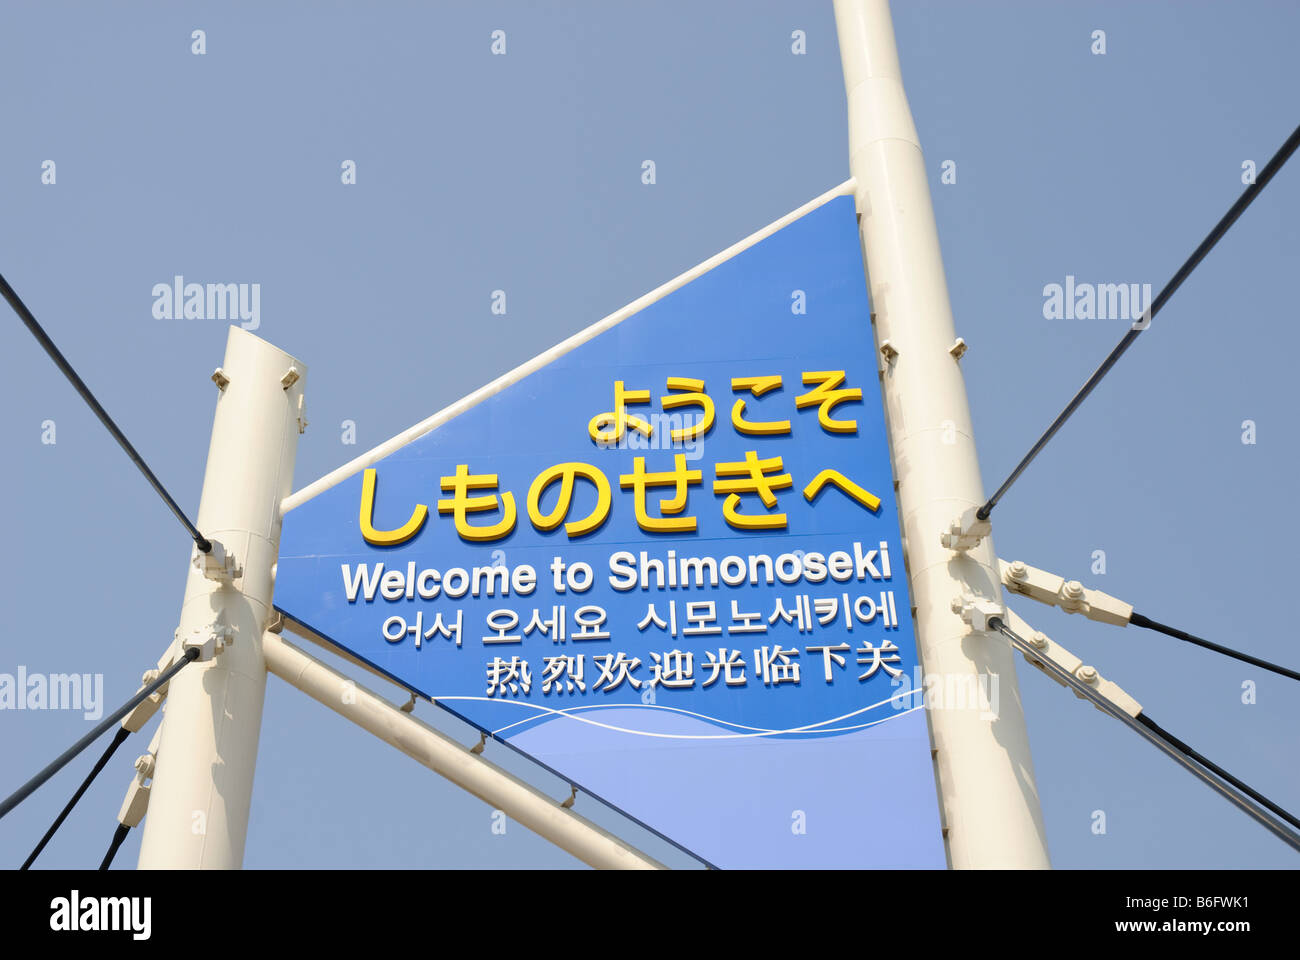 Inscription L'accueil des visiteurs en quatre langues de la ville de Shimonoseki, Japon Banque D'Images